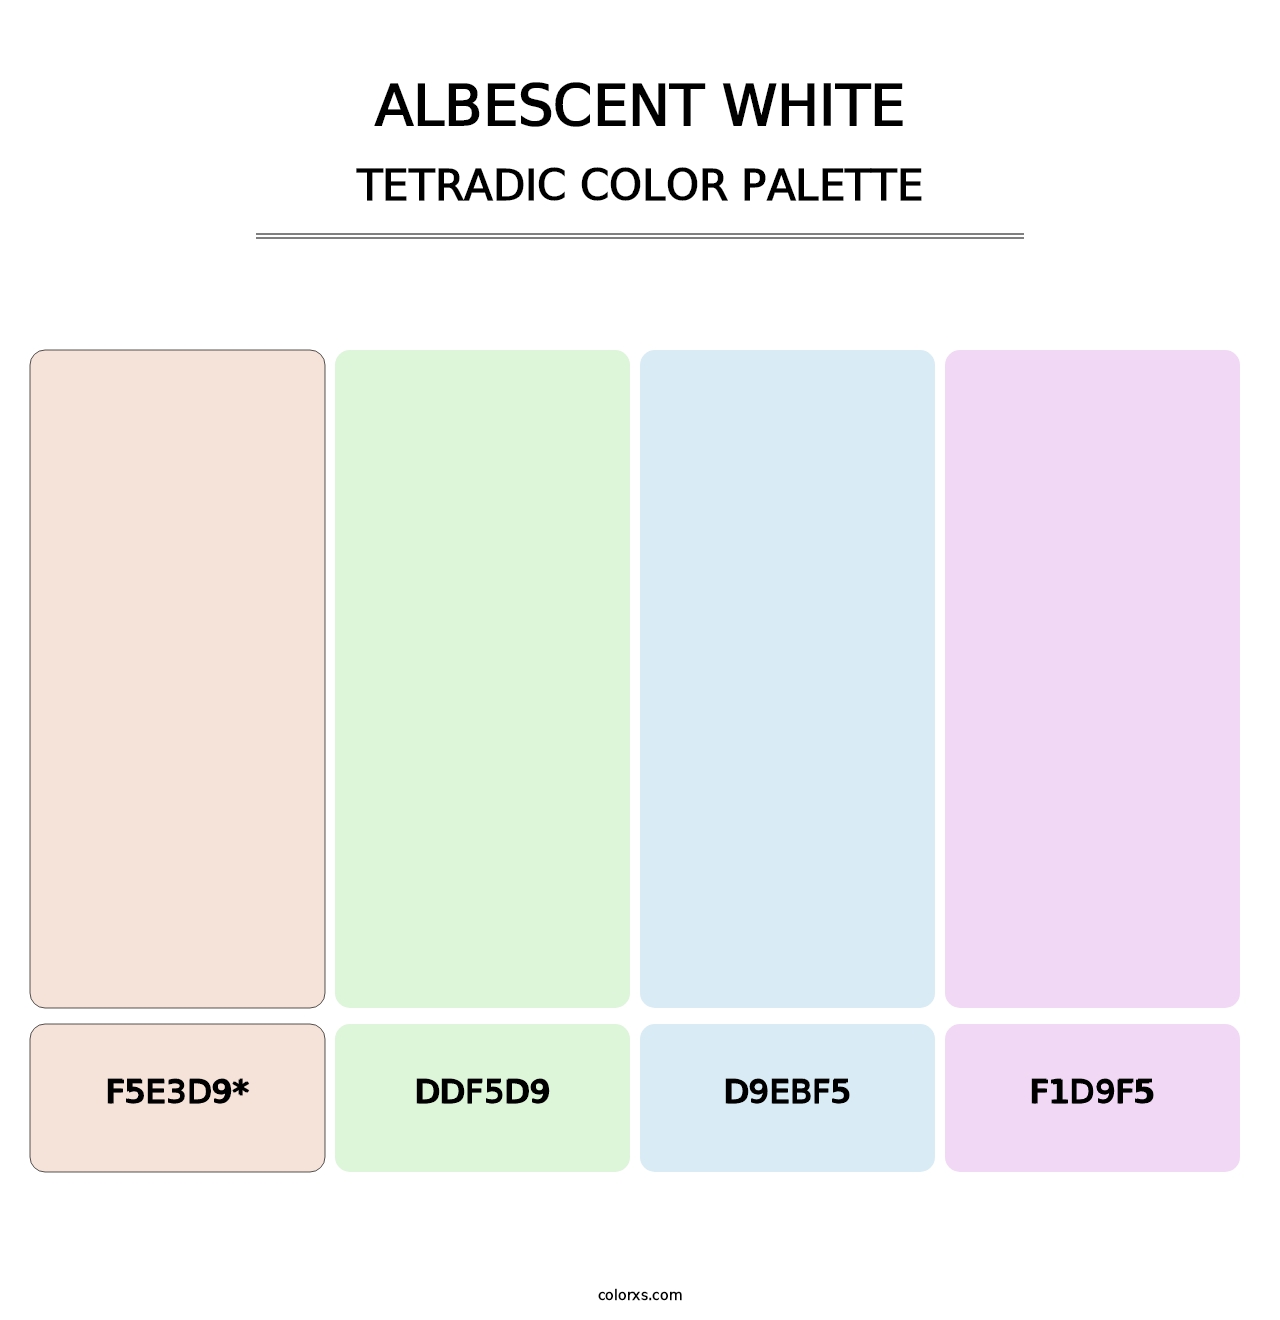 Albescent White - Tetradic Color Palette